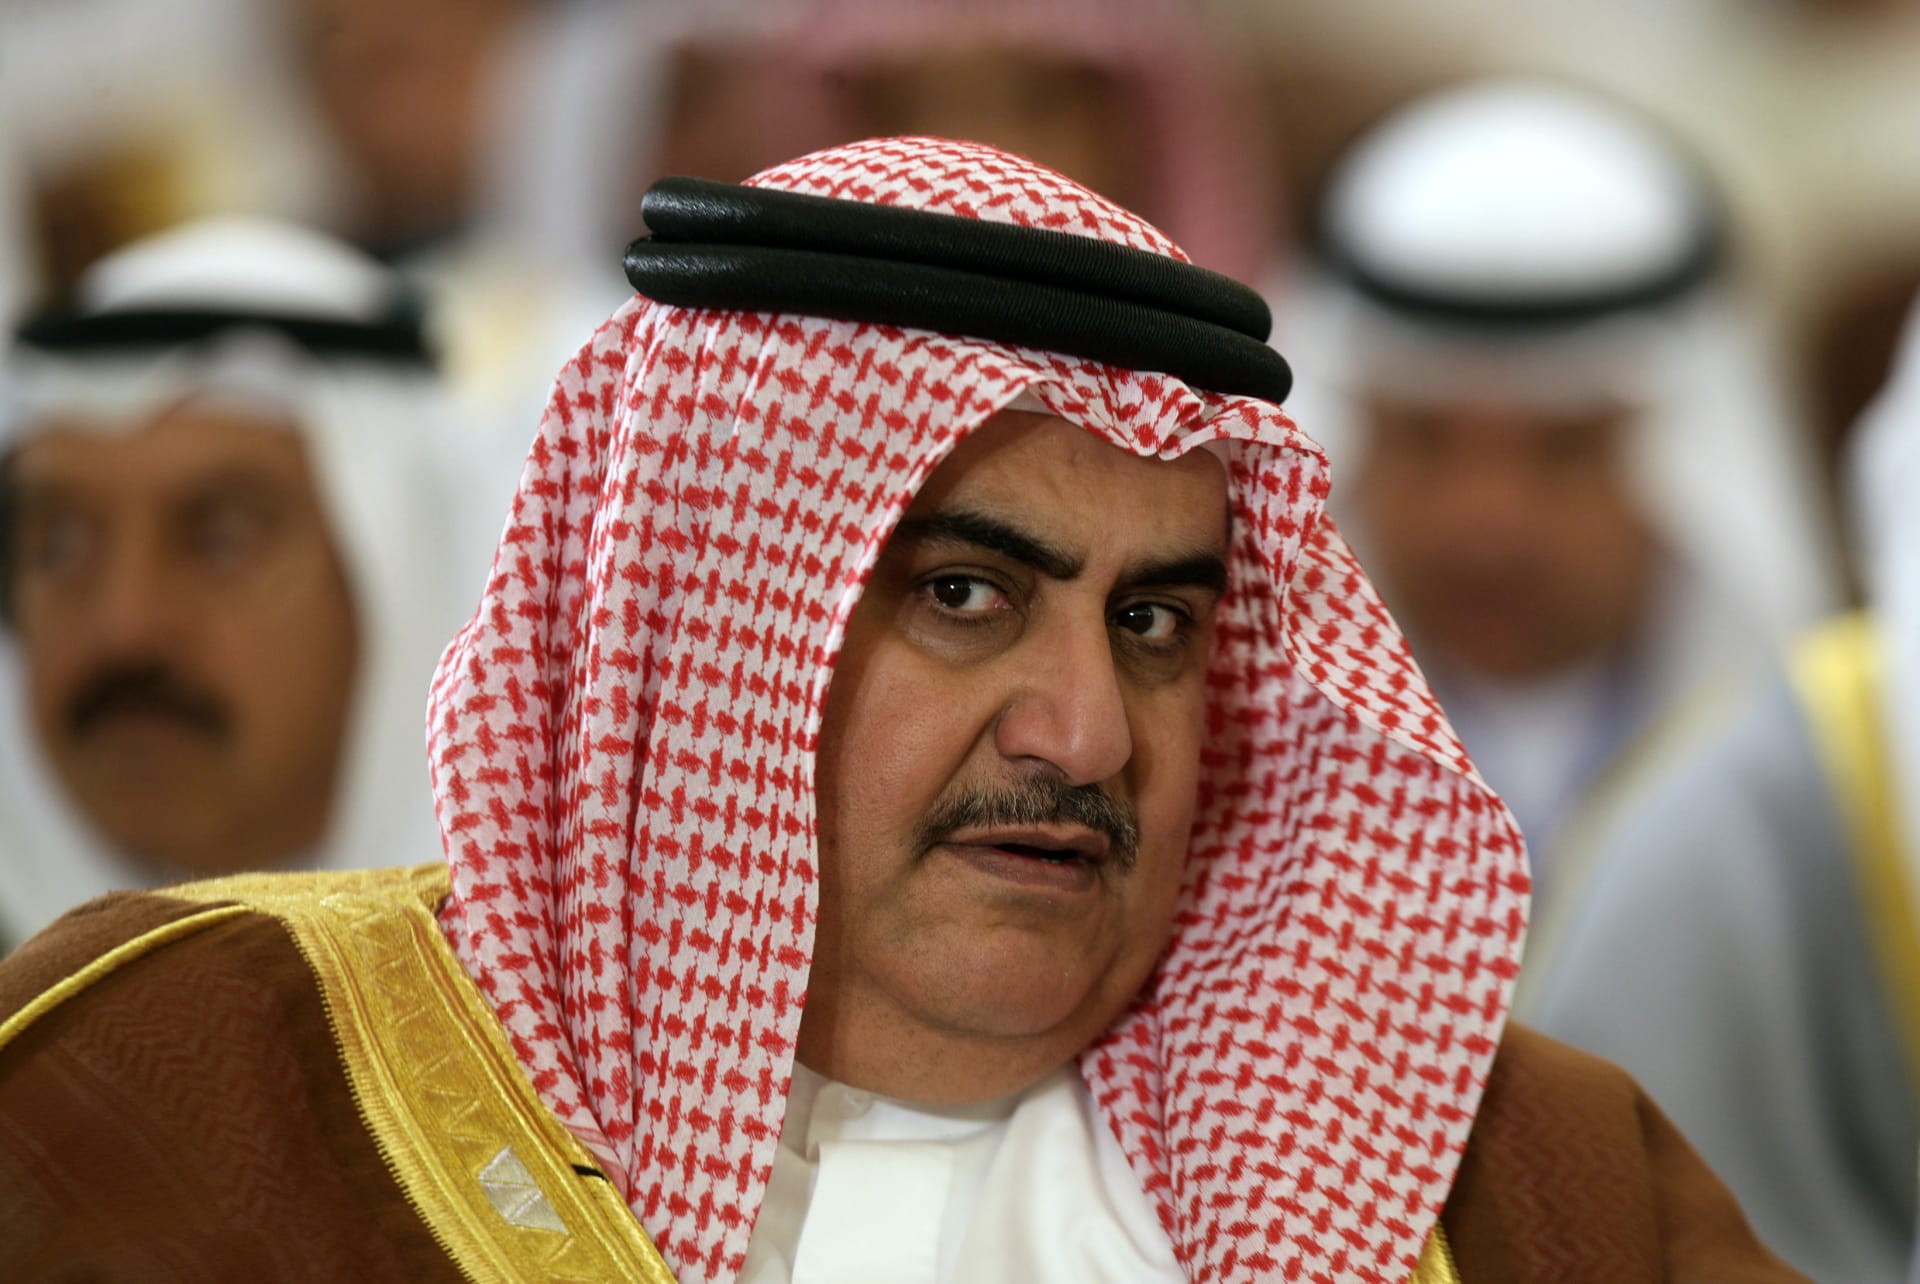 البحرين ترد على تيلرسون حول تقرير الحرية الدينية: سوء فهم عميق للحقائق